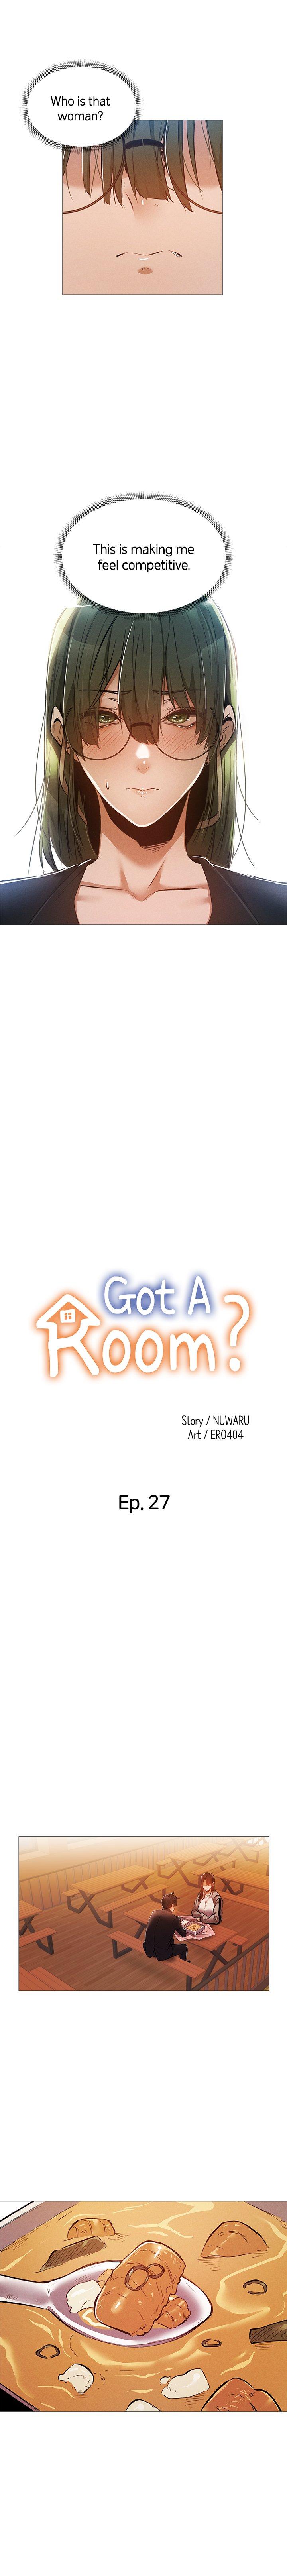 Got a Room? 20